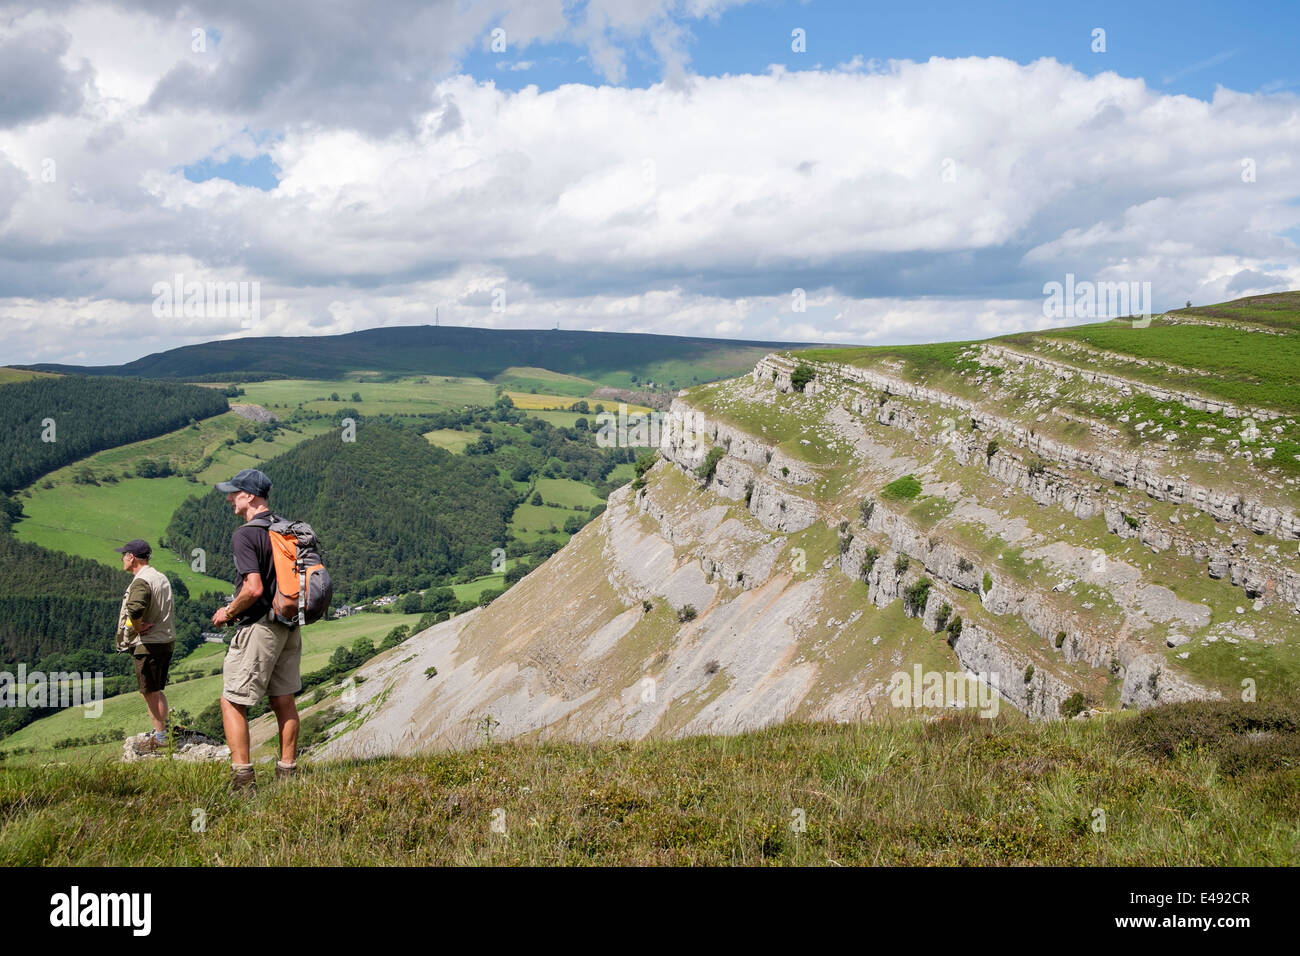 Les promeneurs sur Eglwyseg avec la montagne au-dessus de l'escarpement de calcaire dans la vallée de l'été. Llangollen Denbighshire North Wales Royaume-uni Grande-Bretagne Banque D'Images